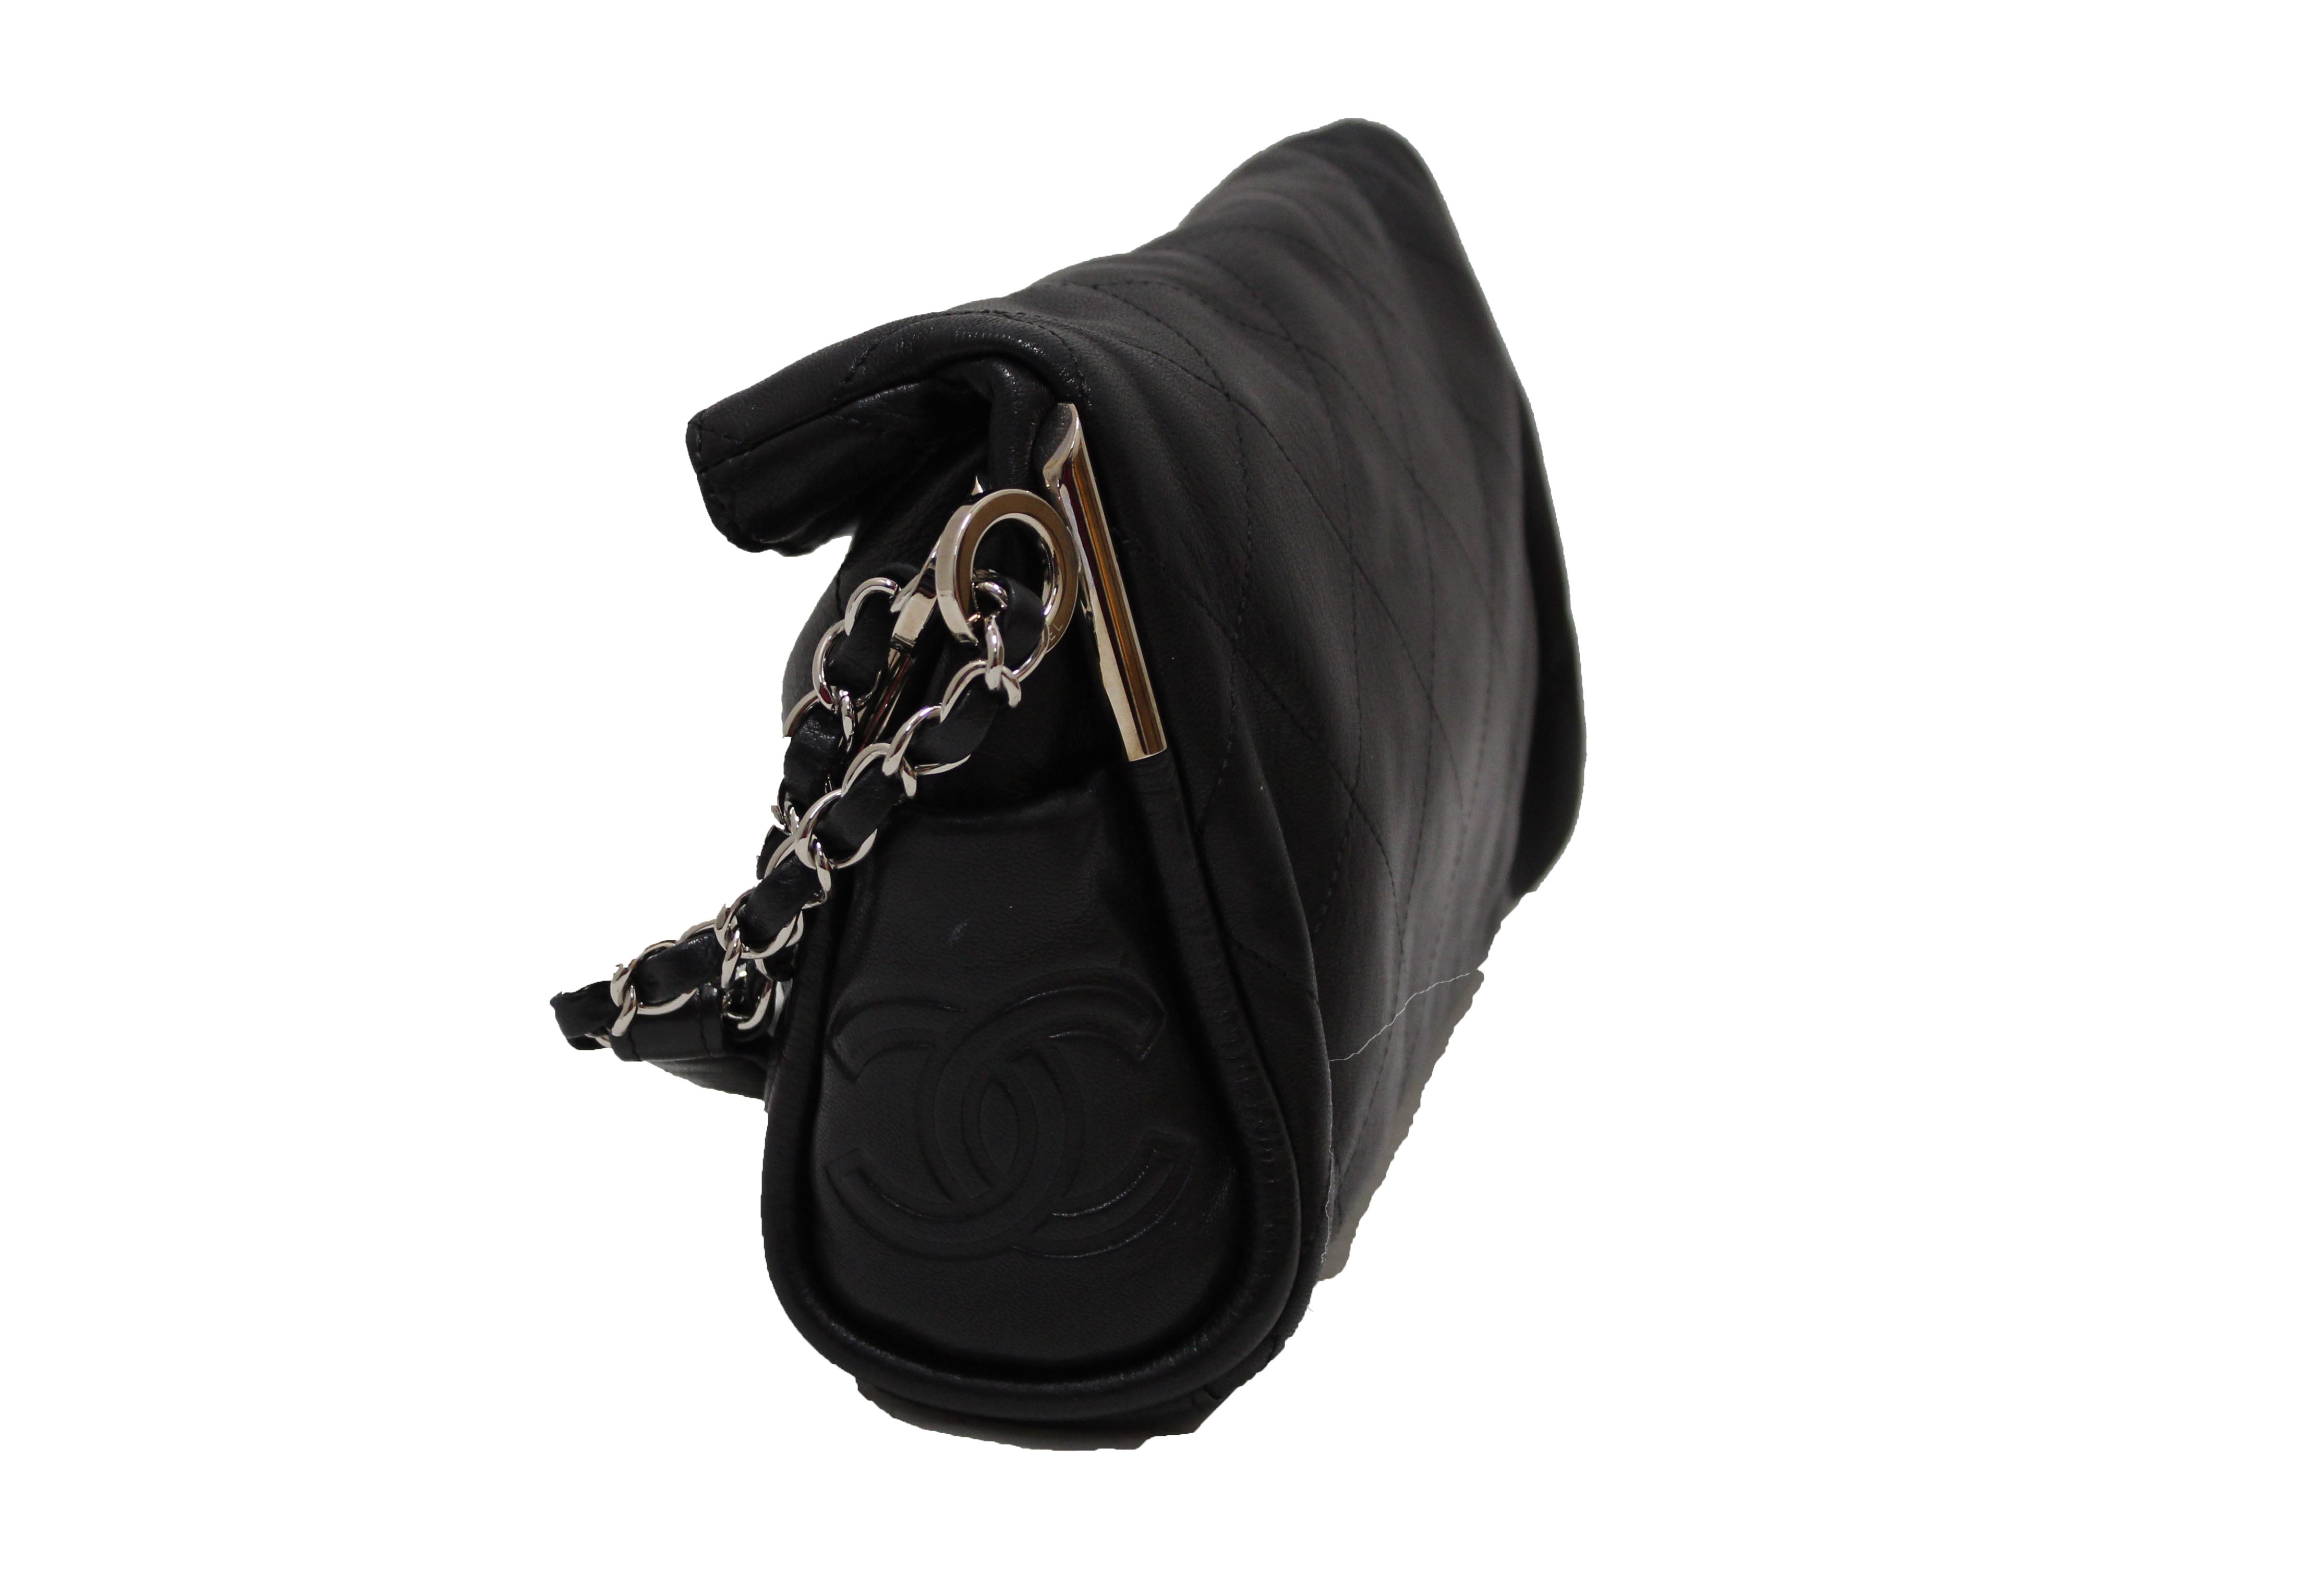 CHANEL Large Ultimate Soft Hobo Black Leather Bag